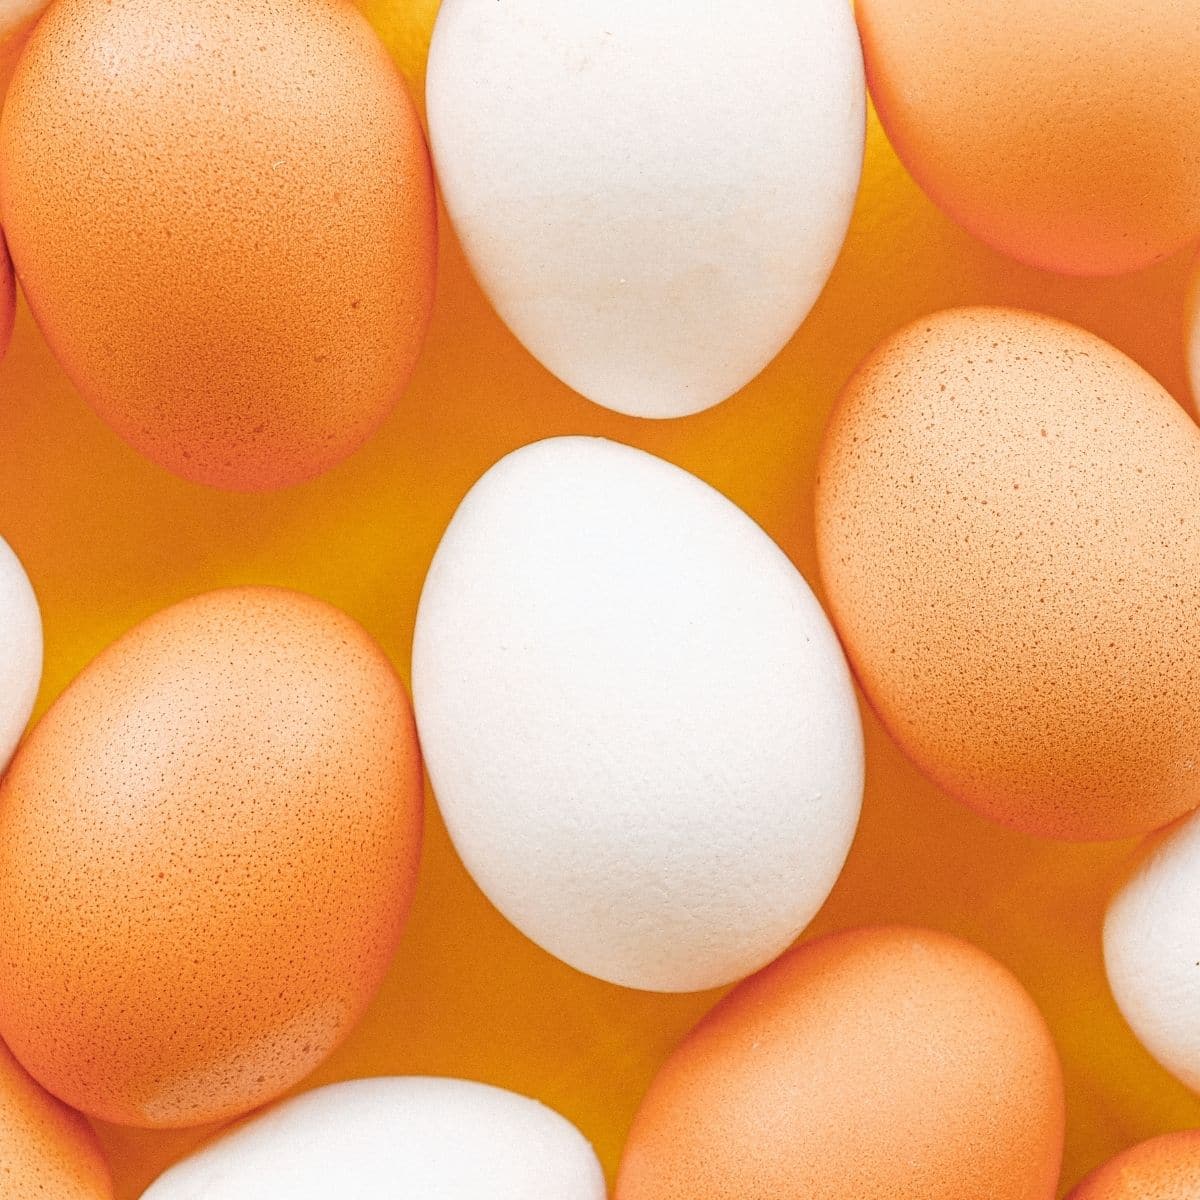 La migliore immagine quadrata sostitutiva di eqq di uova intere marroni e bianche assortite.